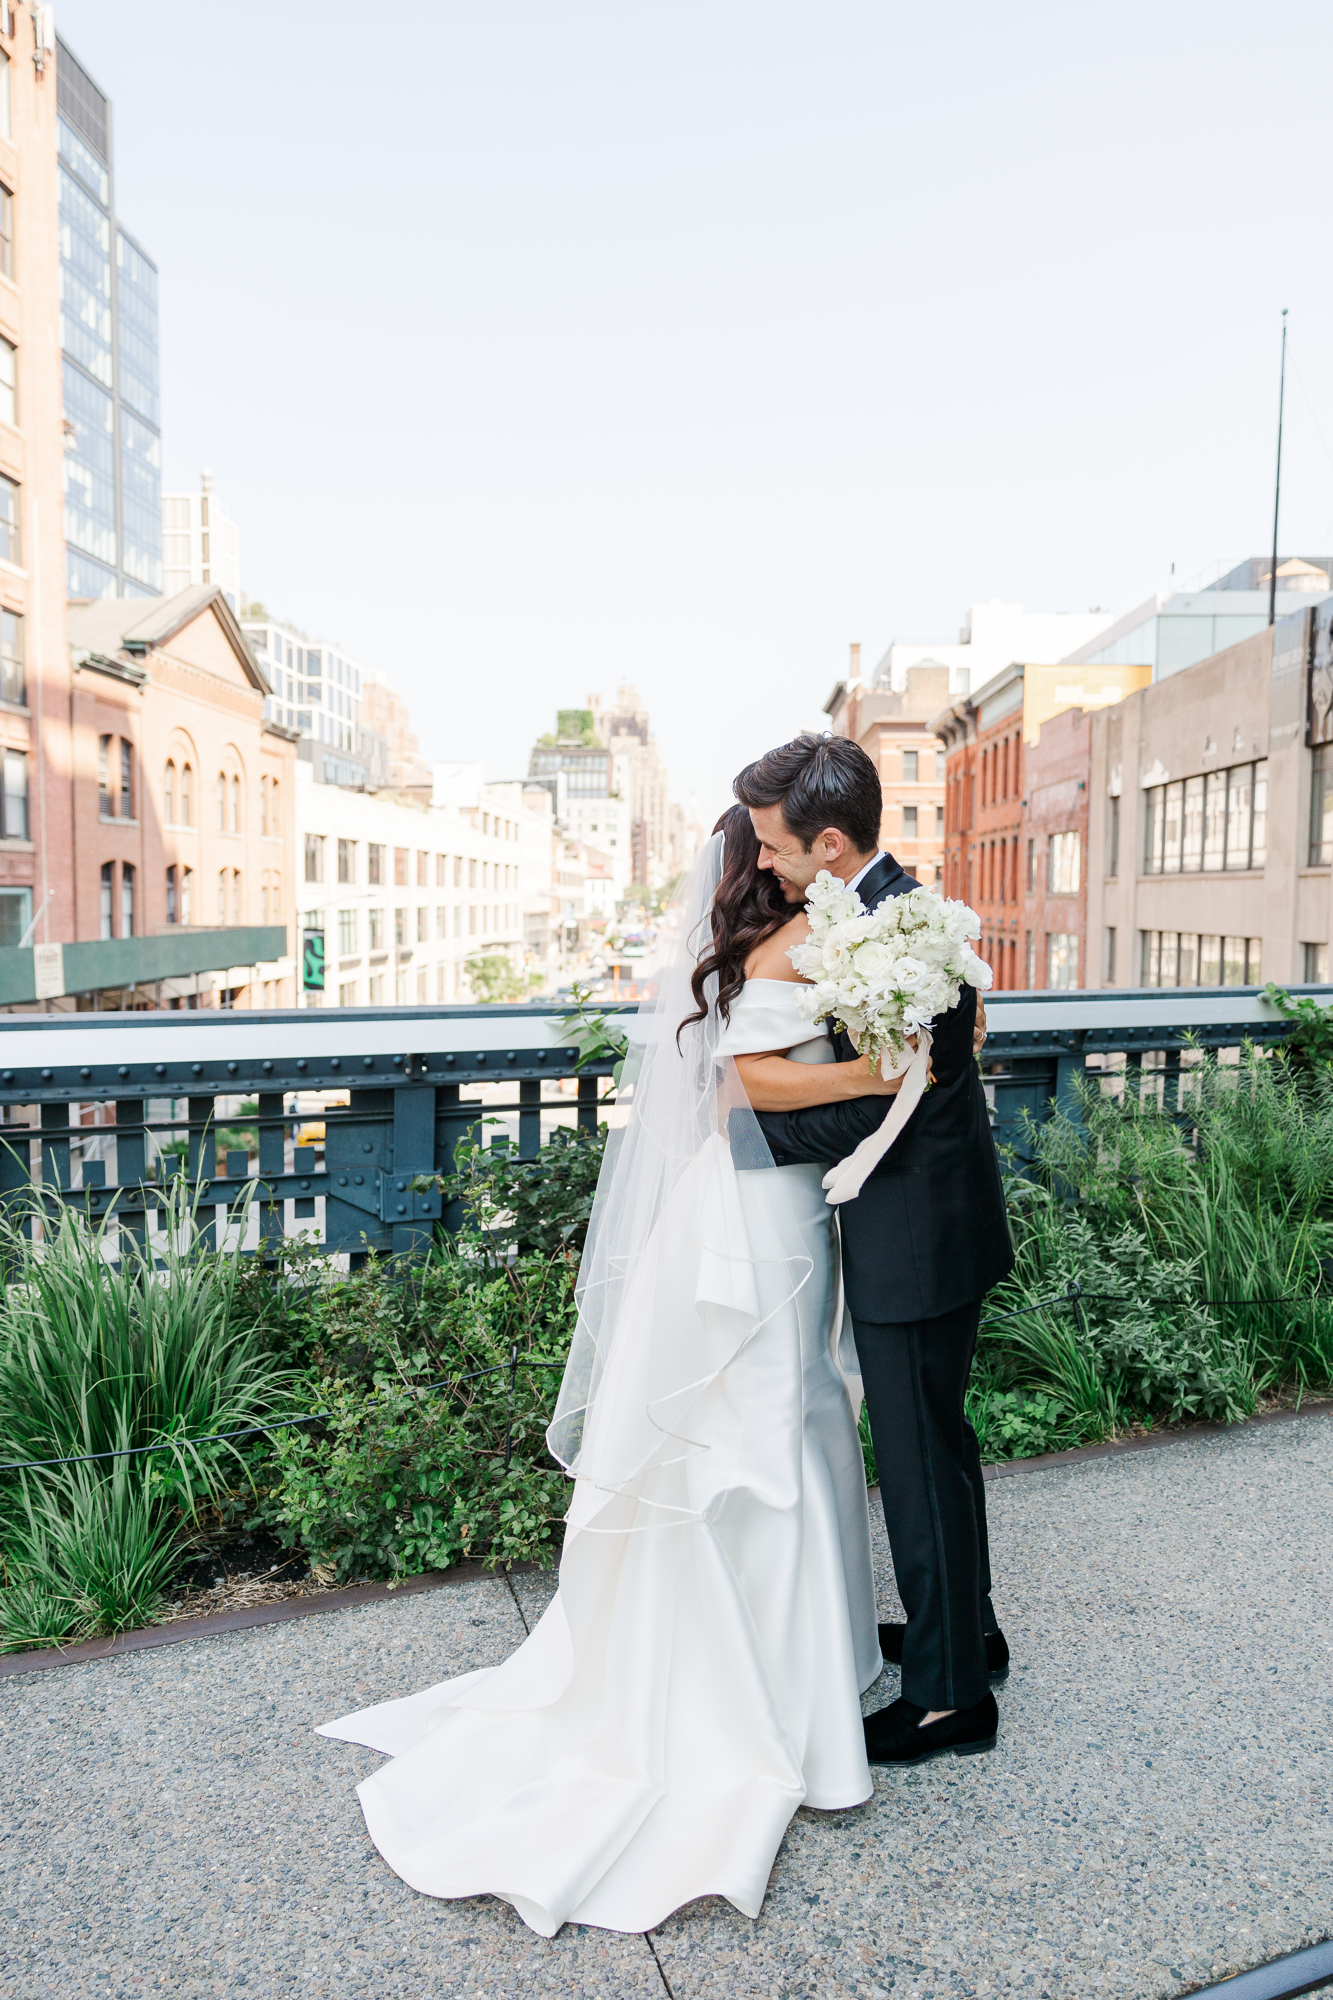 Wonderful Big Green Building Wedding Photos in Brooklyn, NY